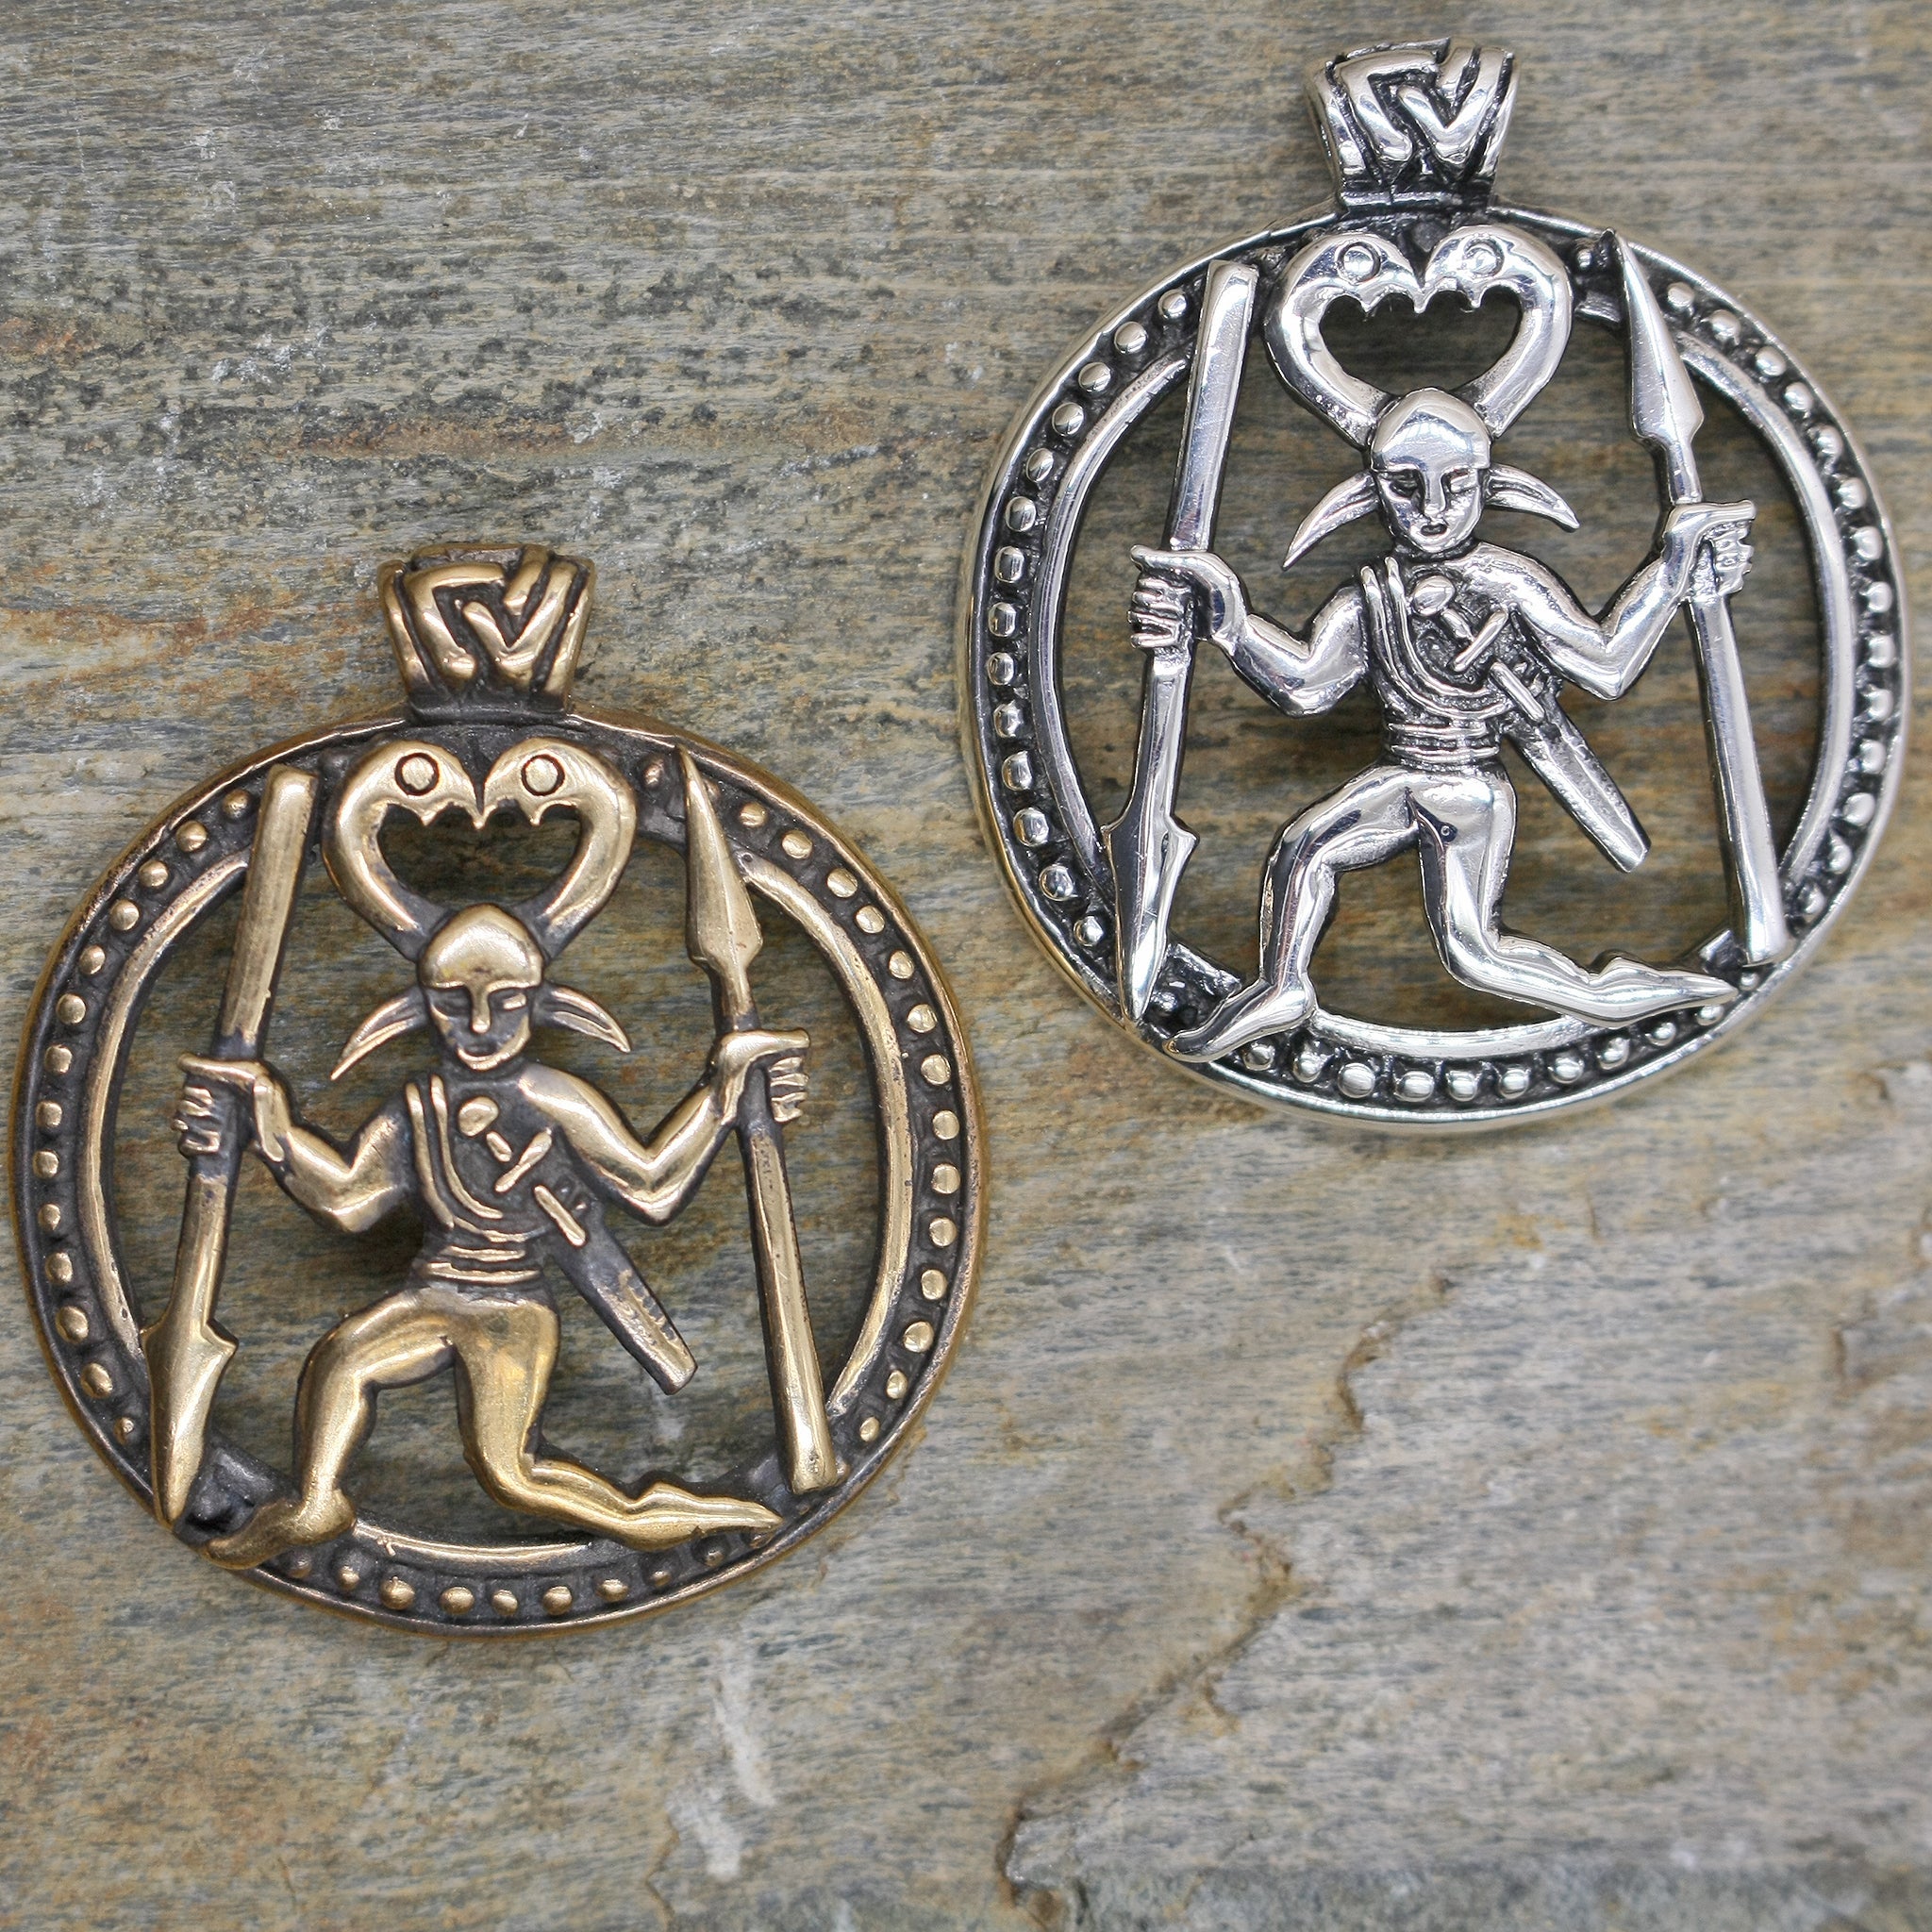 Odin Warrior Pendants - Bronze & Silver on Rock